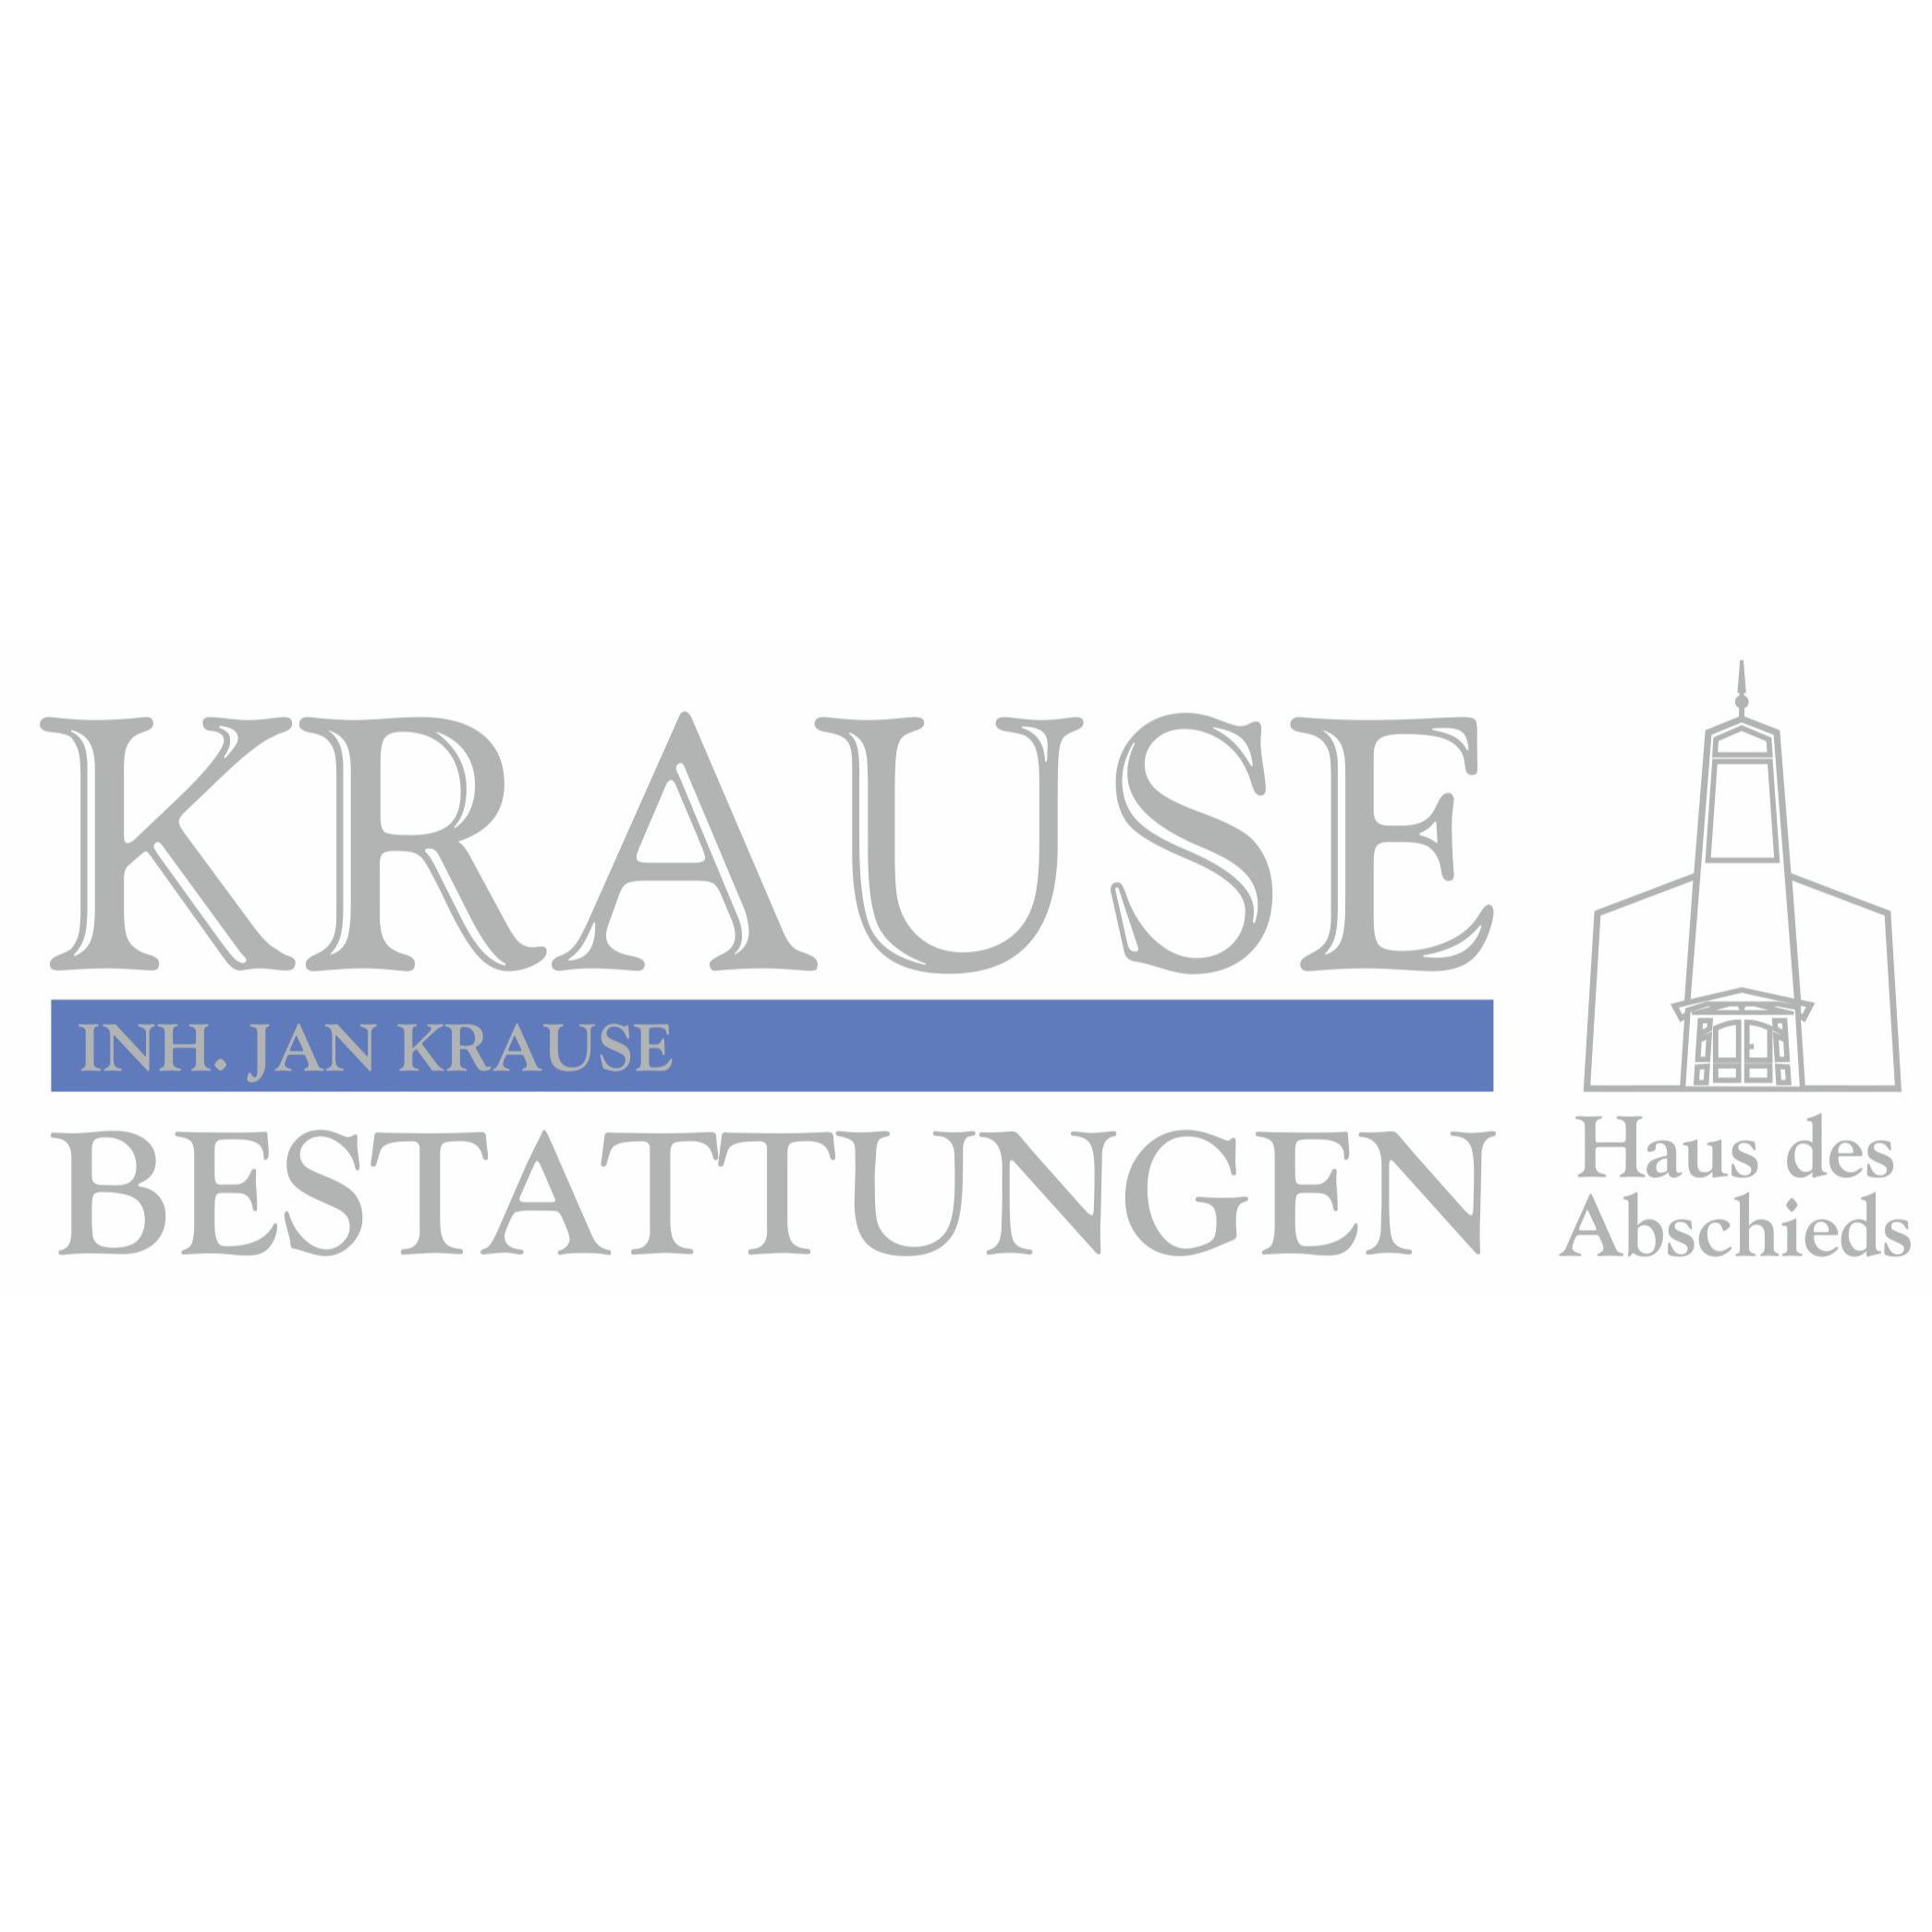 Krause Bestattungen Haus des Abschieds Inh. Jan Krause in Lägerdorf - Logo